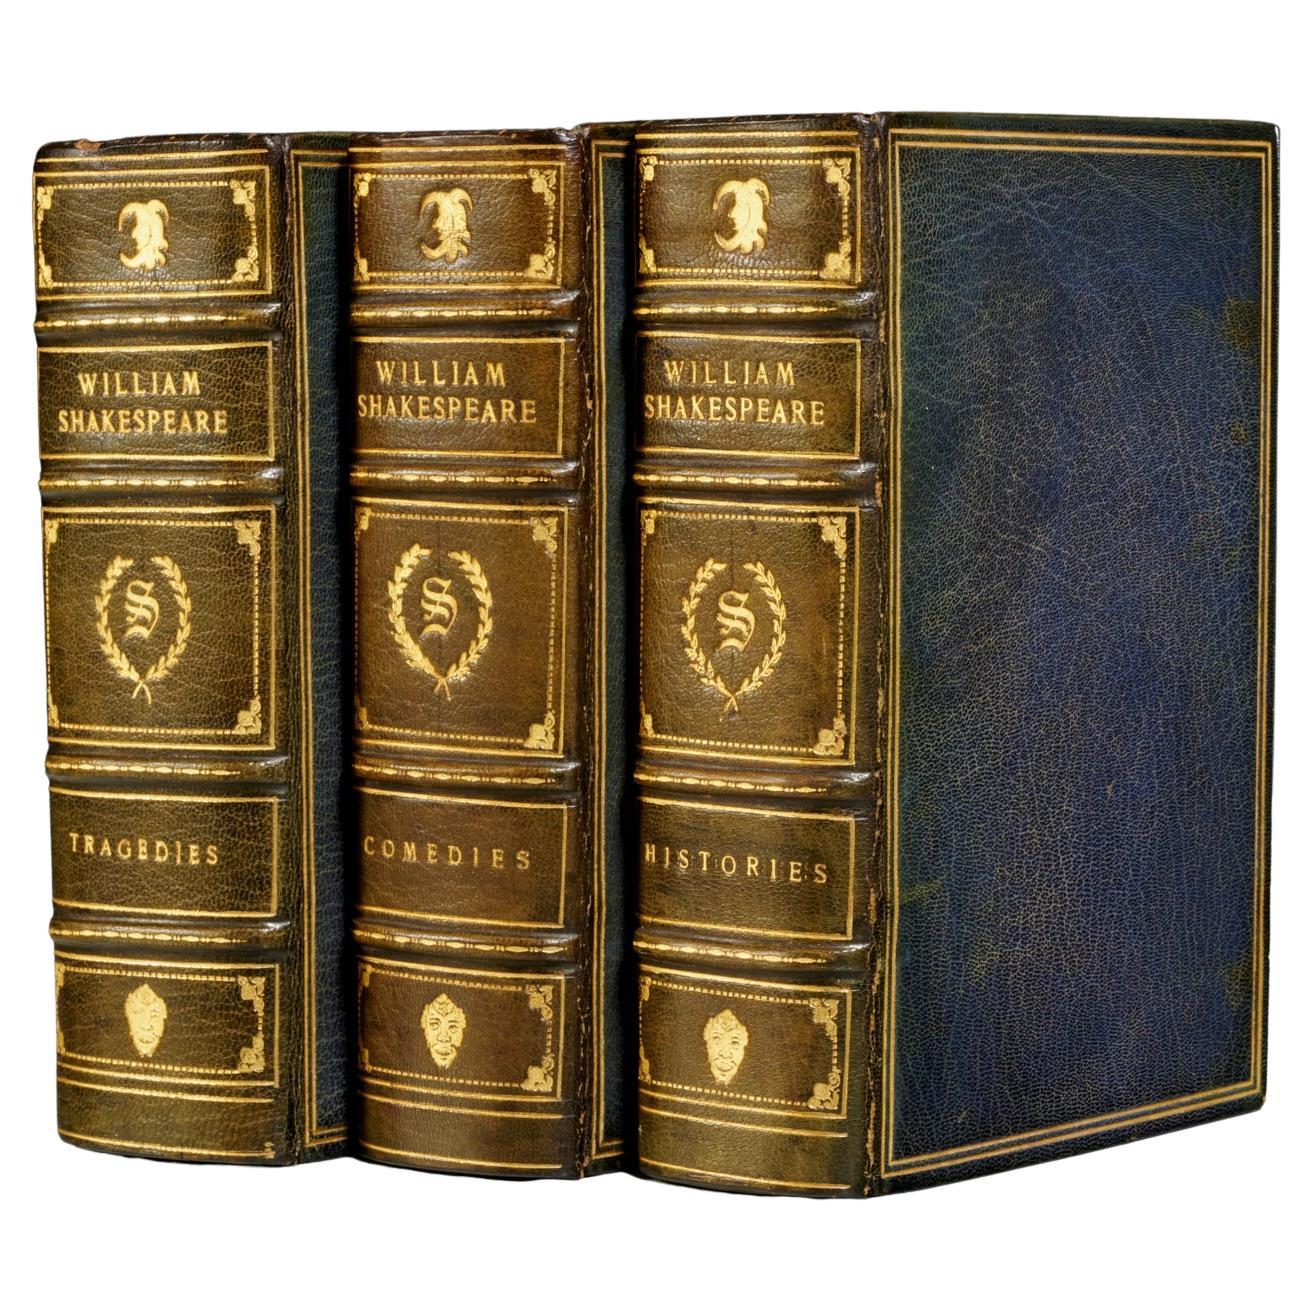 Les œuvres de William Shakespeare, édition Mayfair reliée en cuir anglais Niger